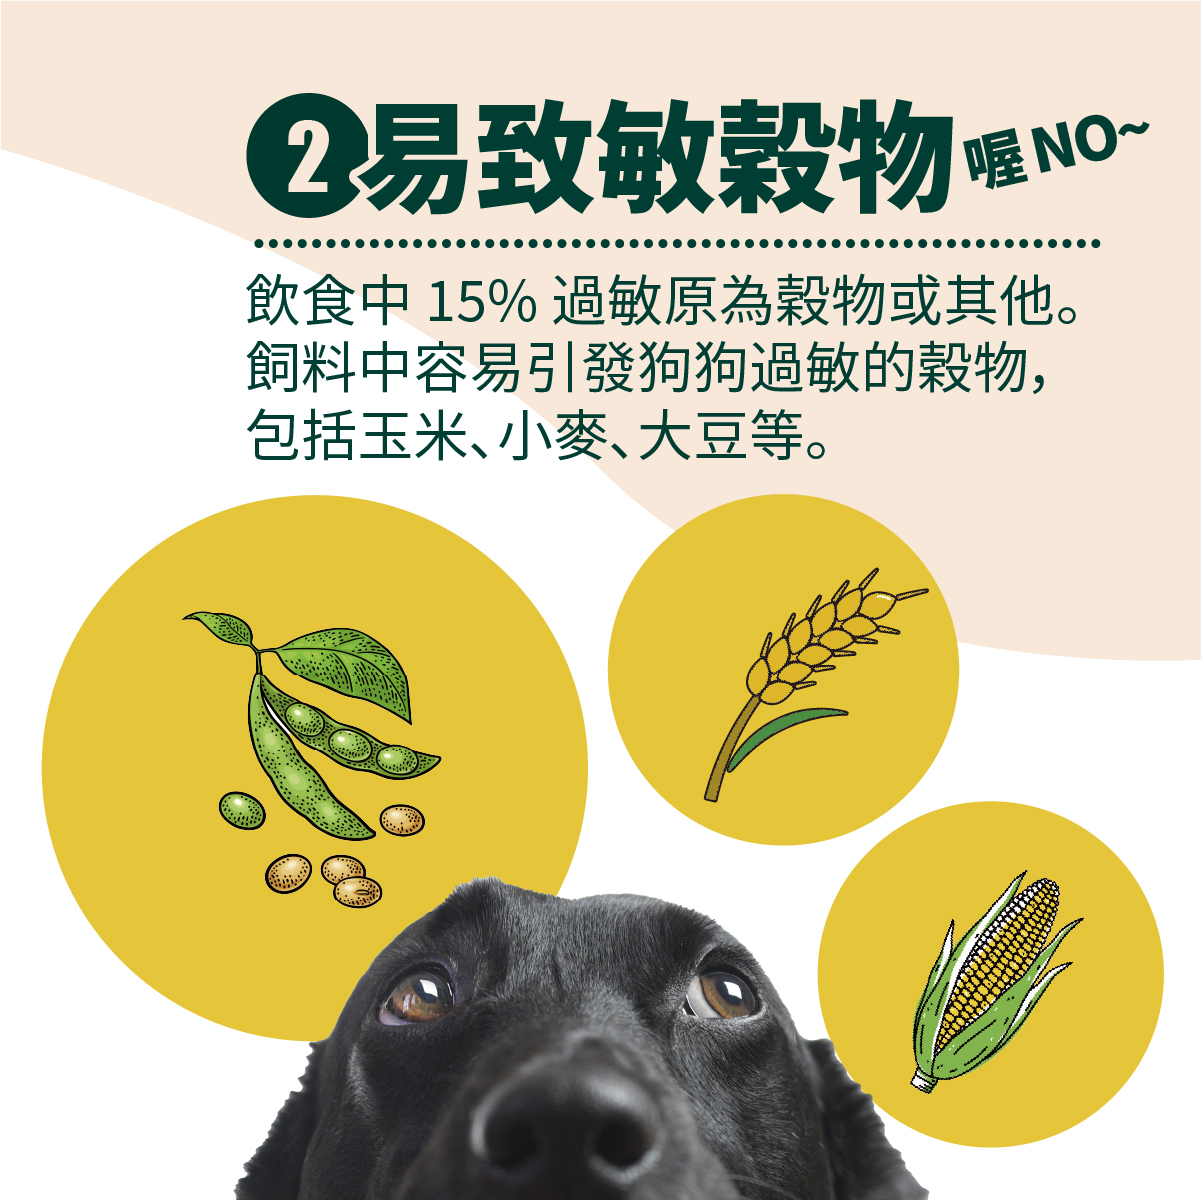 飲食中 15% 過敏原為穀物或其他。
飼料中容易引發狗狗過敏的穀物，
包括玉米、小麥、大豆等。